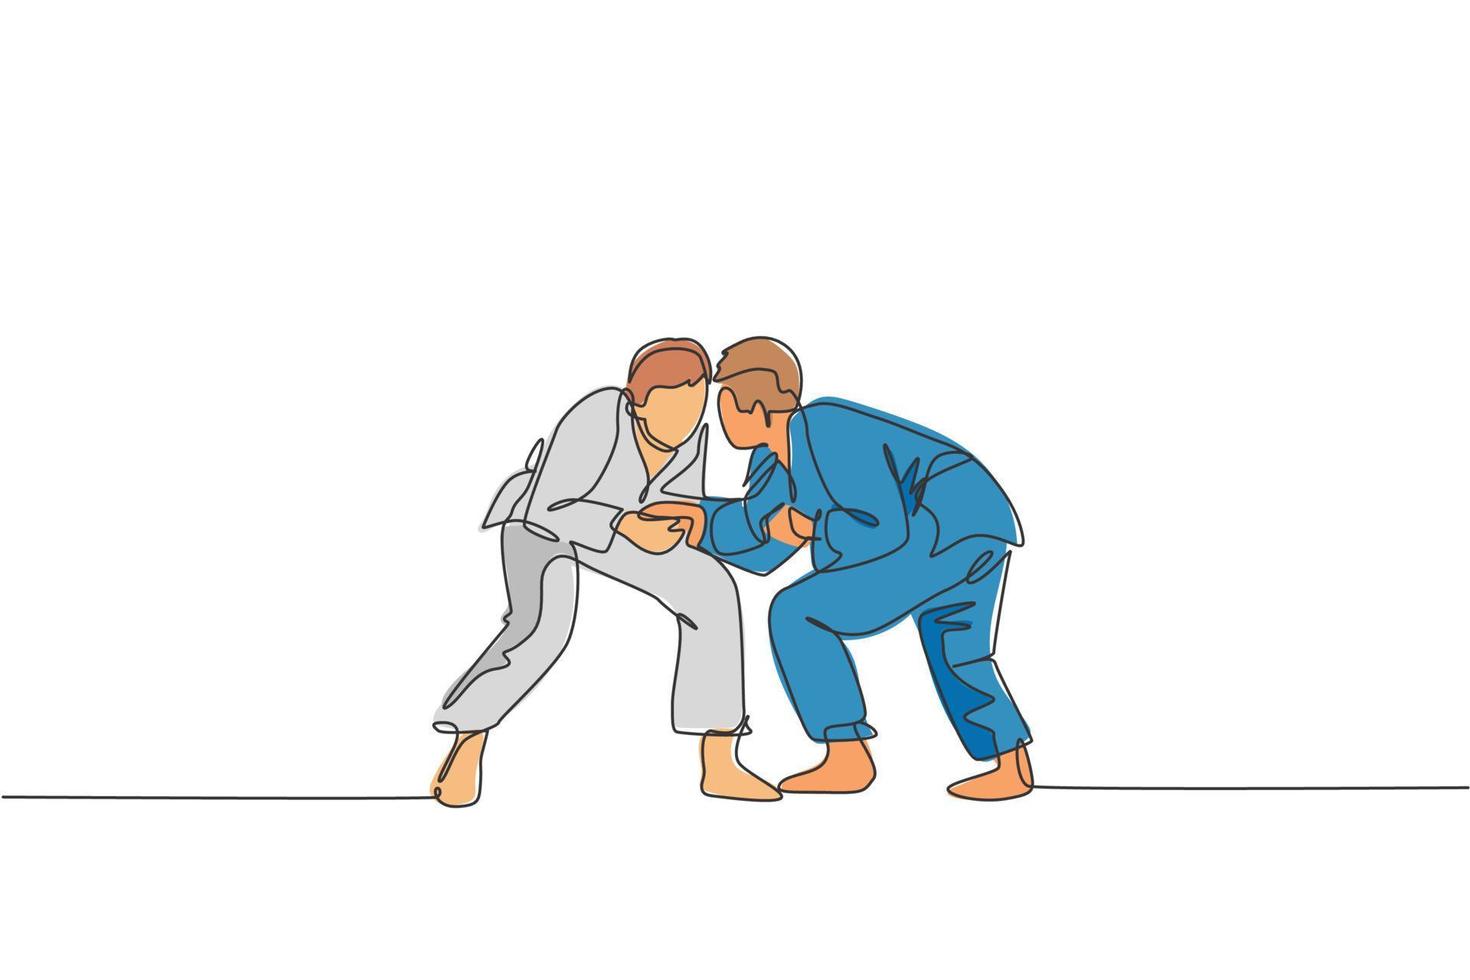 dibujo de una sola línea continua de dos jóvenes luchadores de judoka deportivos que practican la habilidad de judo en el centro de gimnasia dojo. lucha contra jujitsu, concepto de deporte de aikido. ilustración de vector de diseño de dibujo de una línea de moda